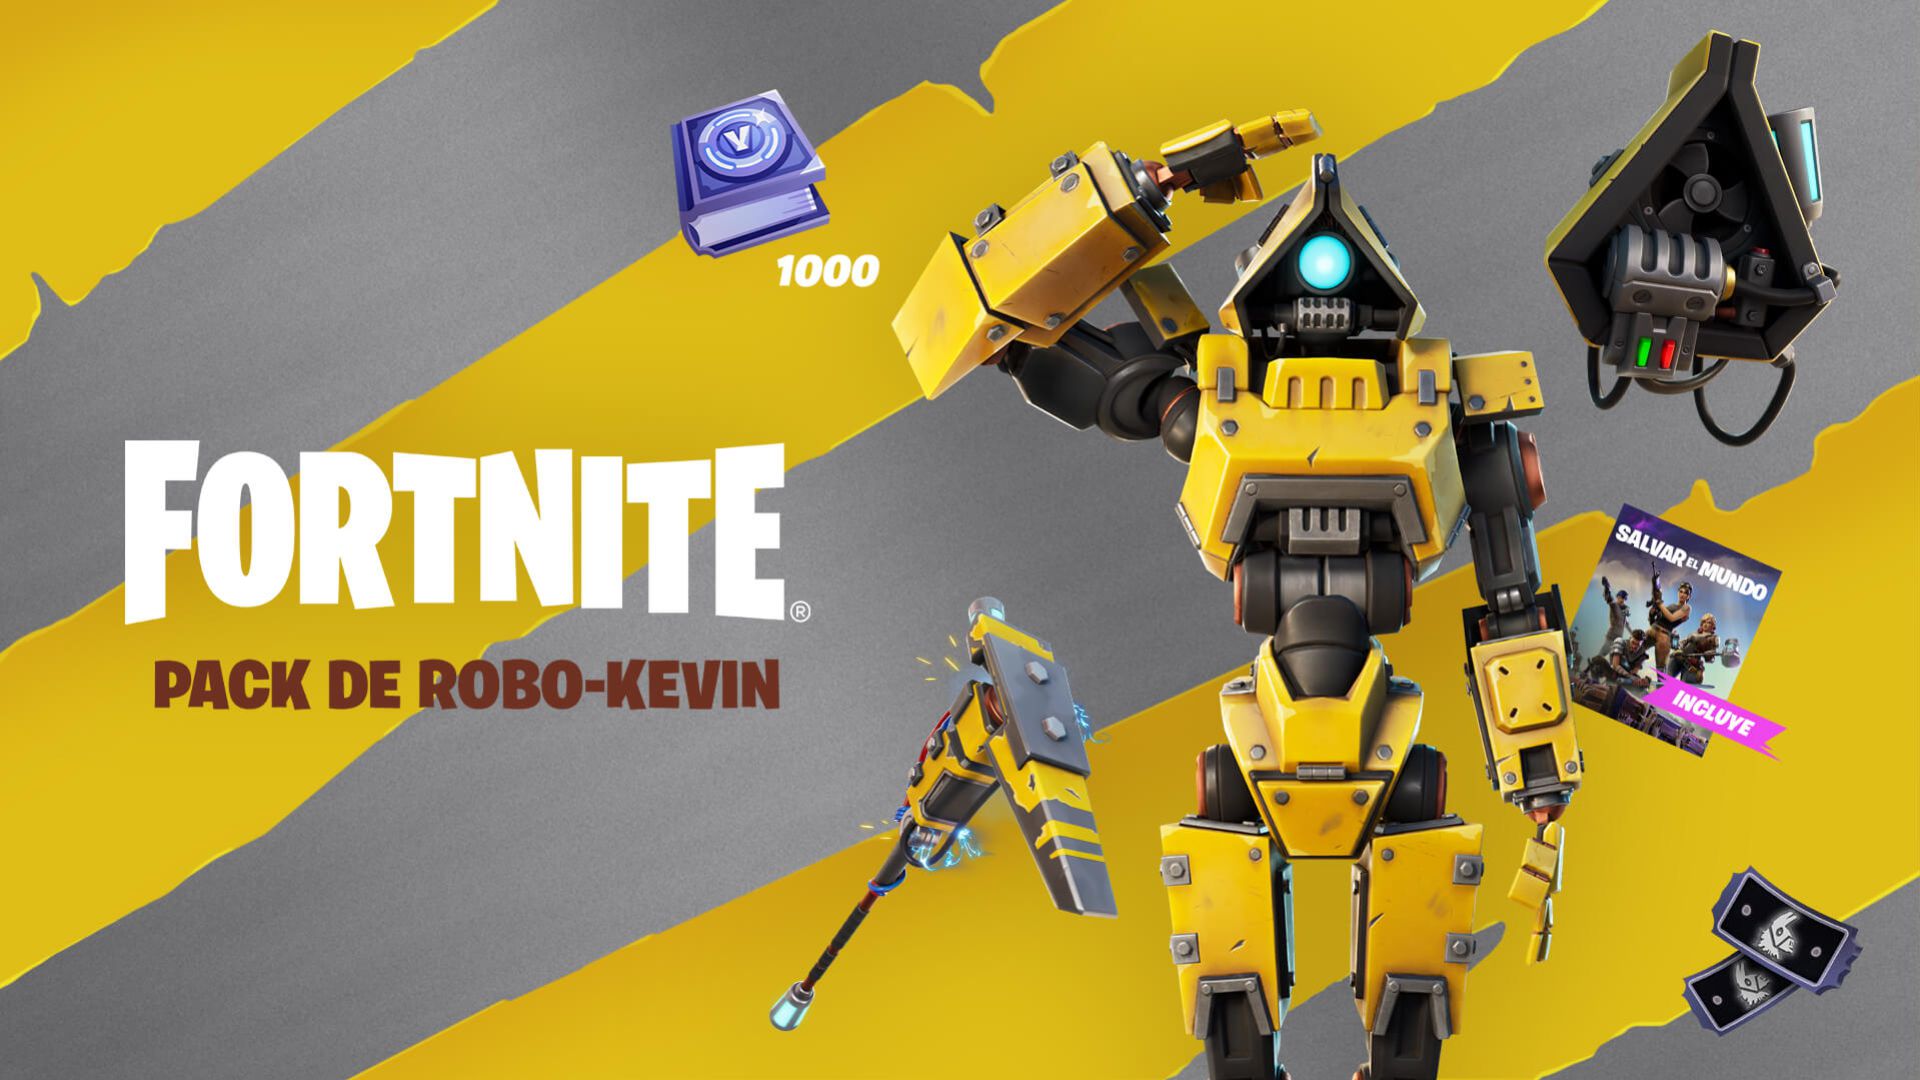 horizonte eso es todo Labe Fortnite: Pack de Robo-Kevin anunciado; todos los detalles - MeriStation